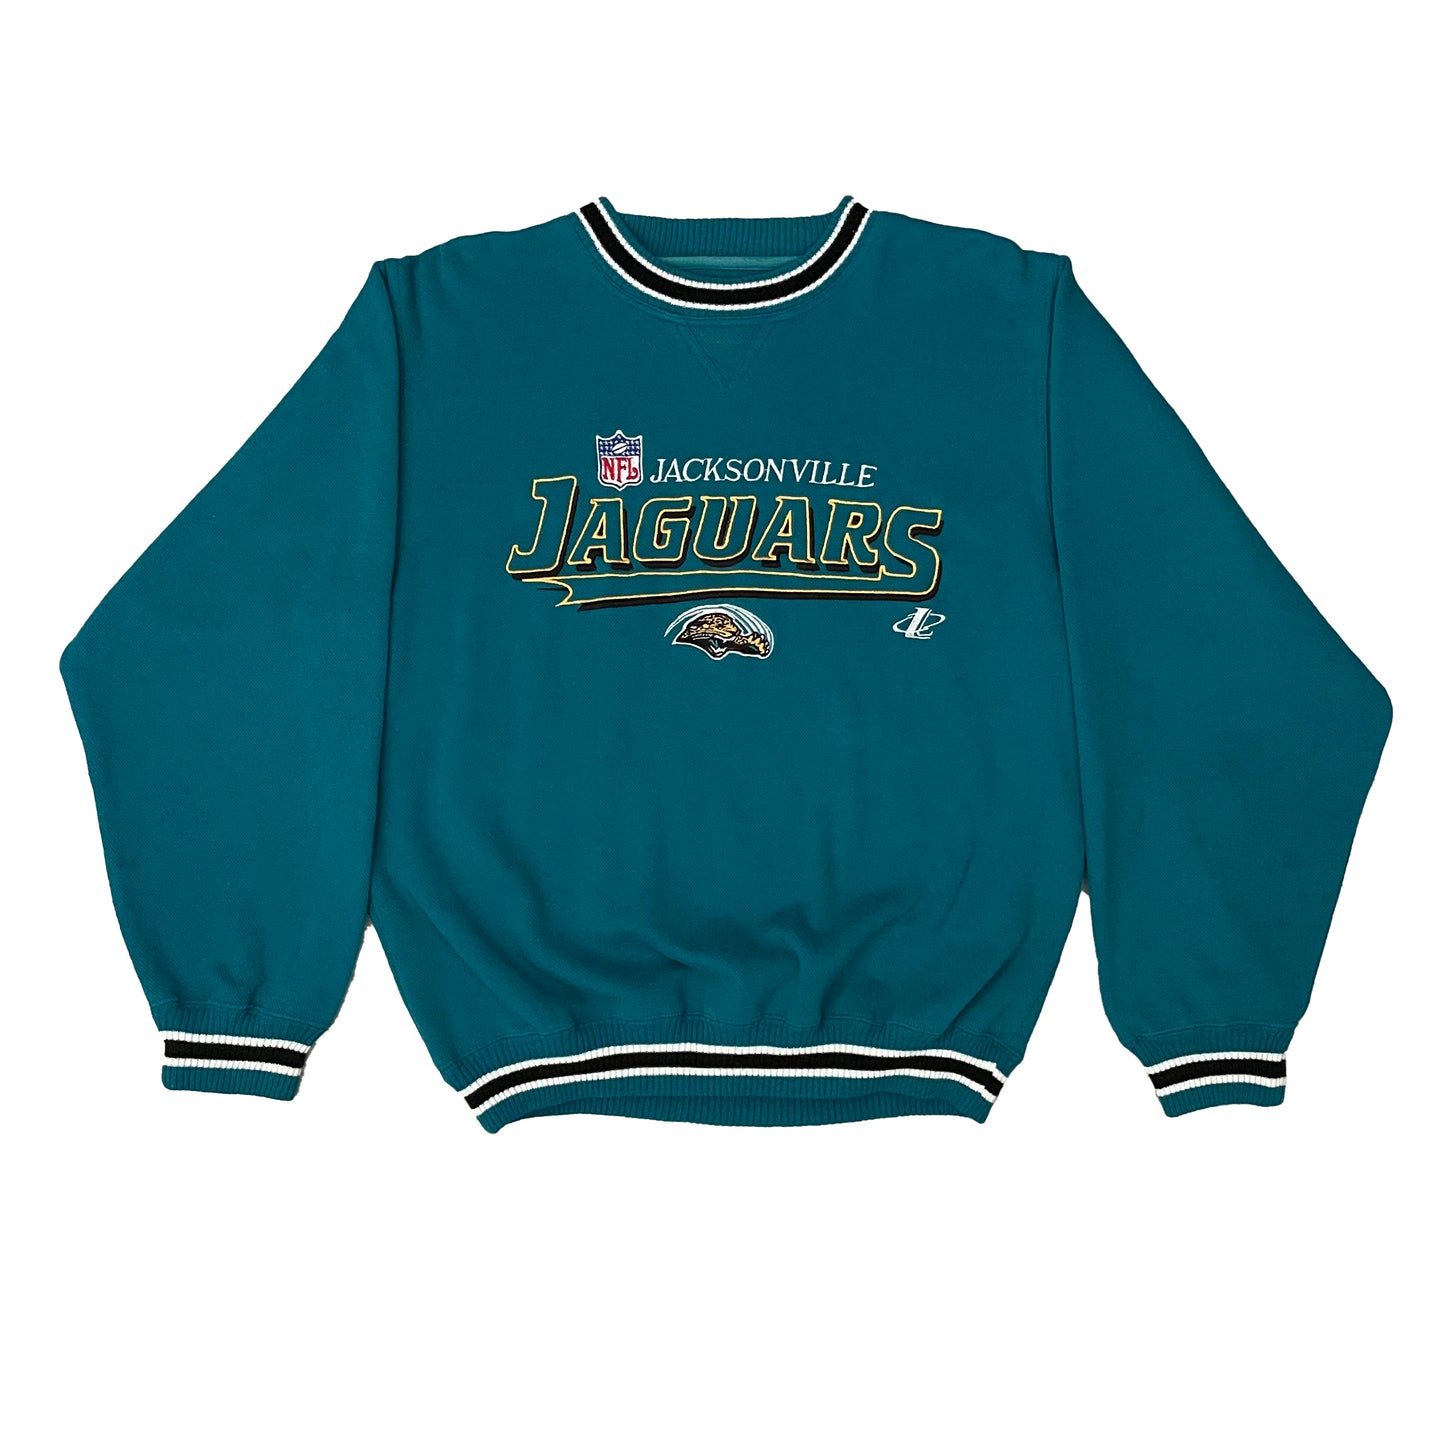 Vintage Jacksonville Jaguars Embroidered LOGO ATHLETIC sweatshirt size MEDIUM